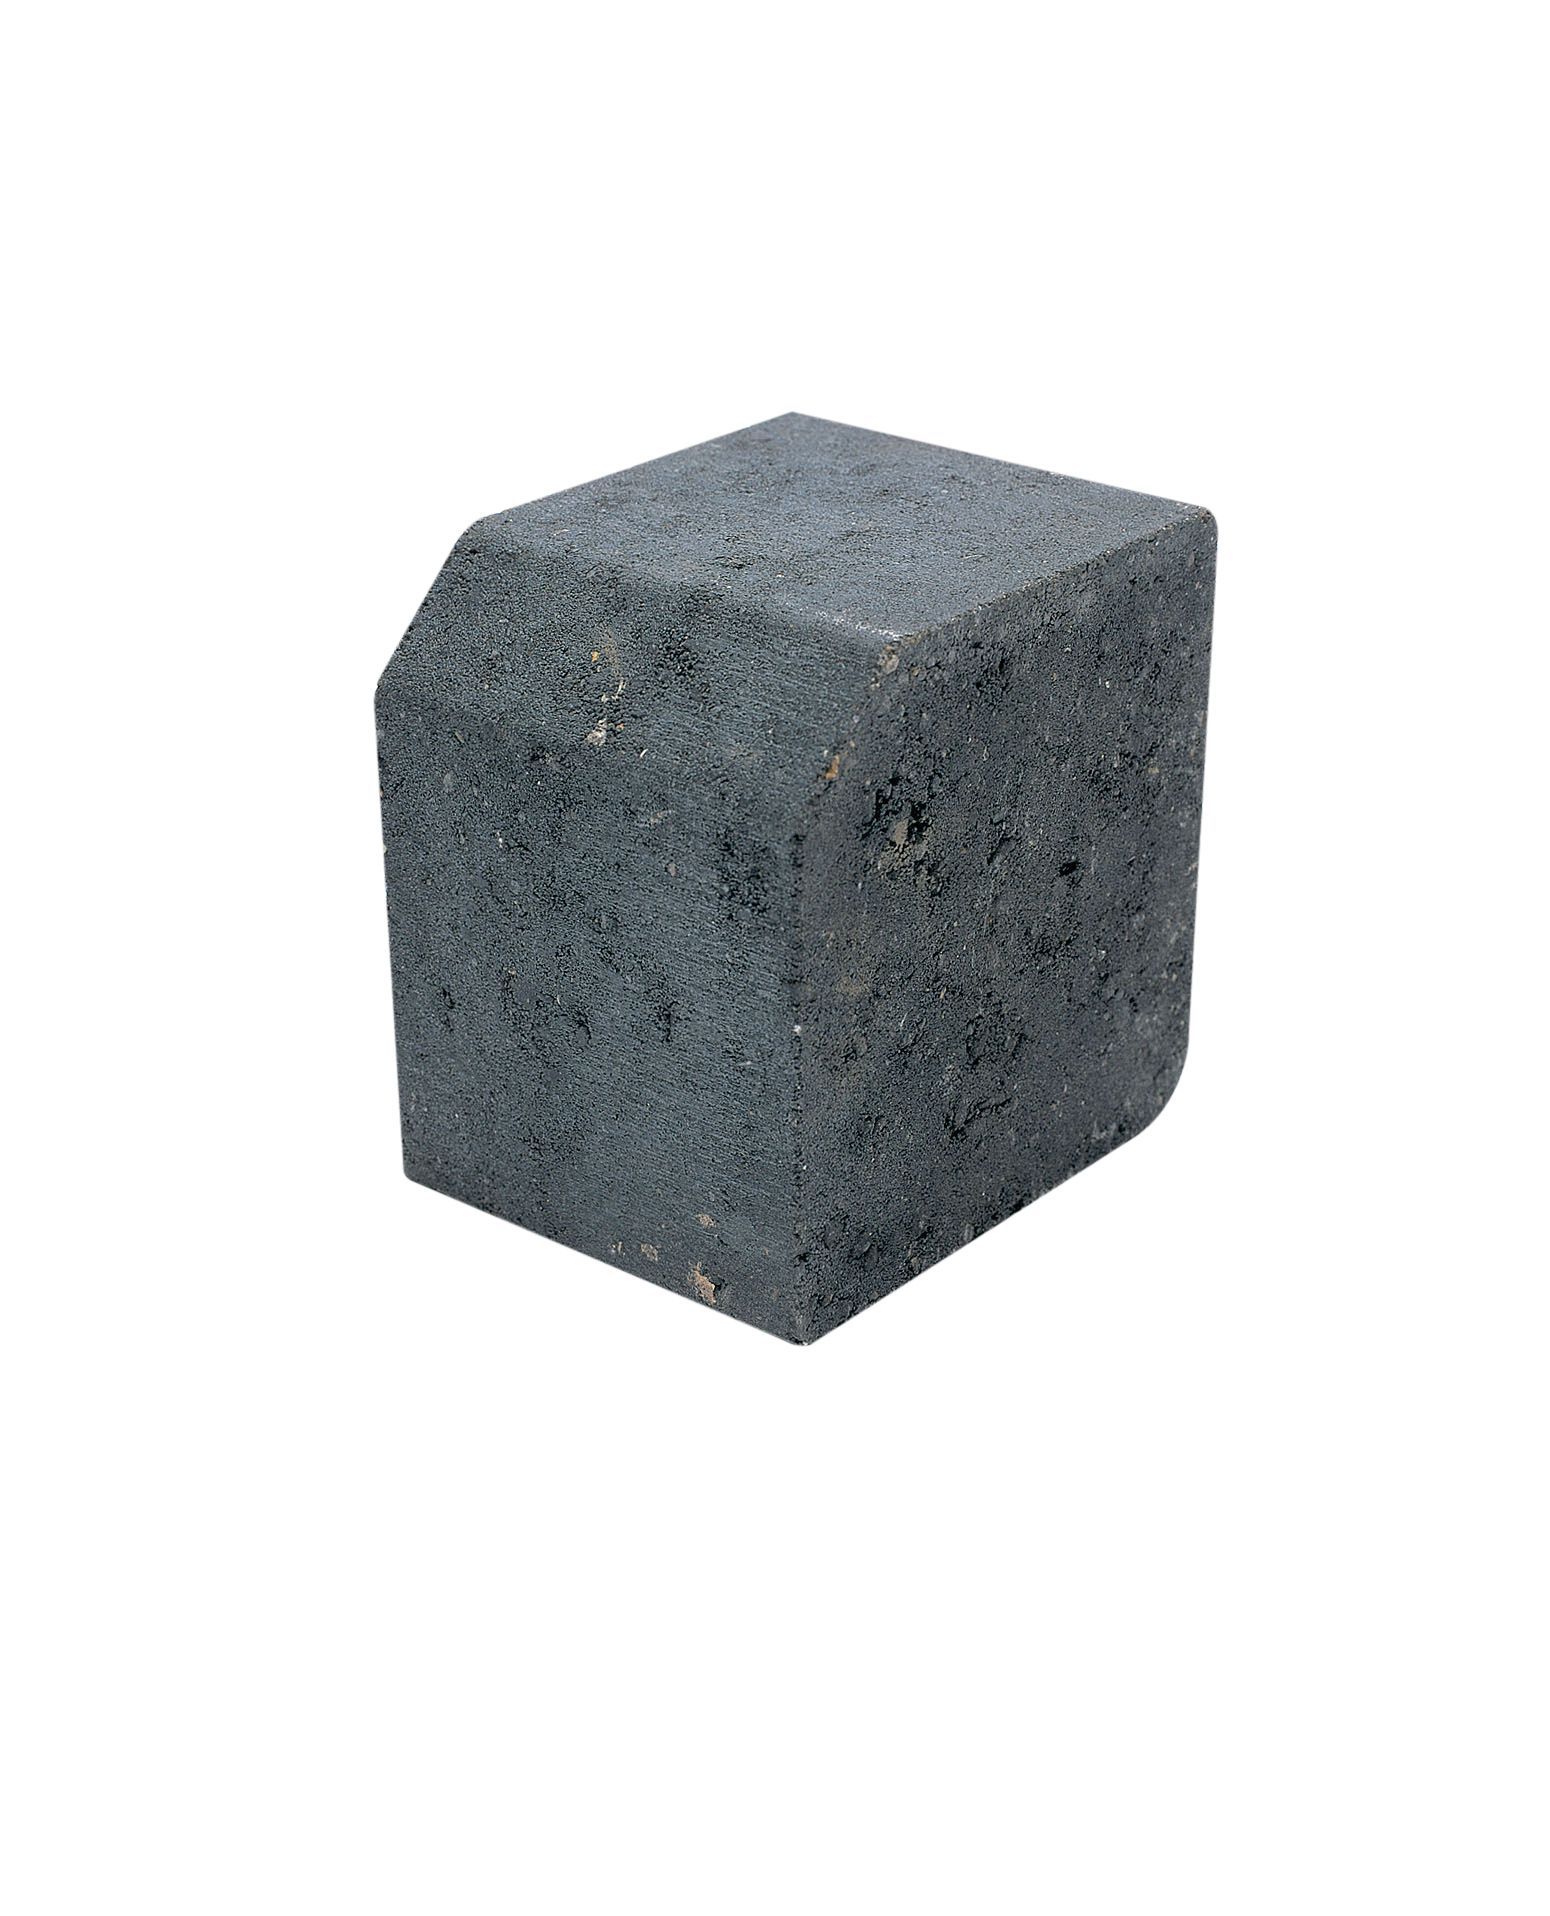 Bradstone Charcoal Block kerb (L)125mm (W)100mm (T)125mm